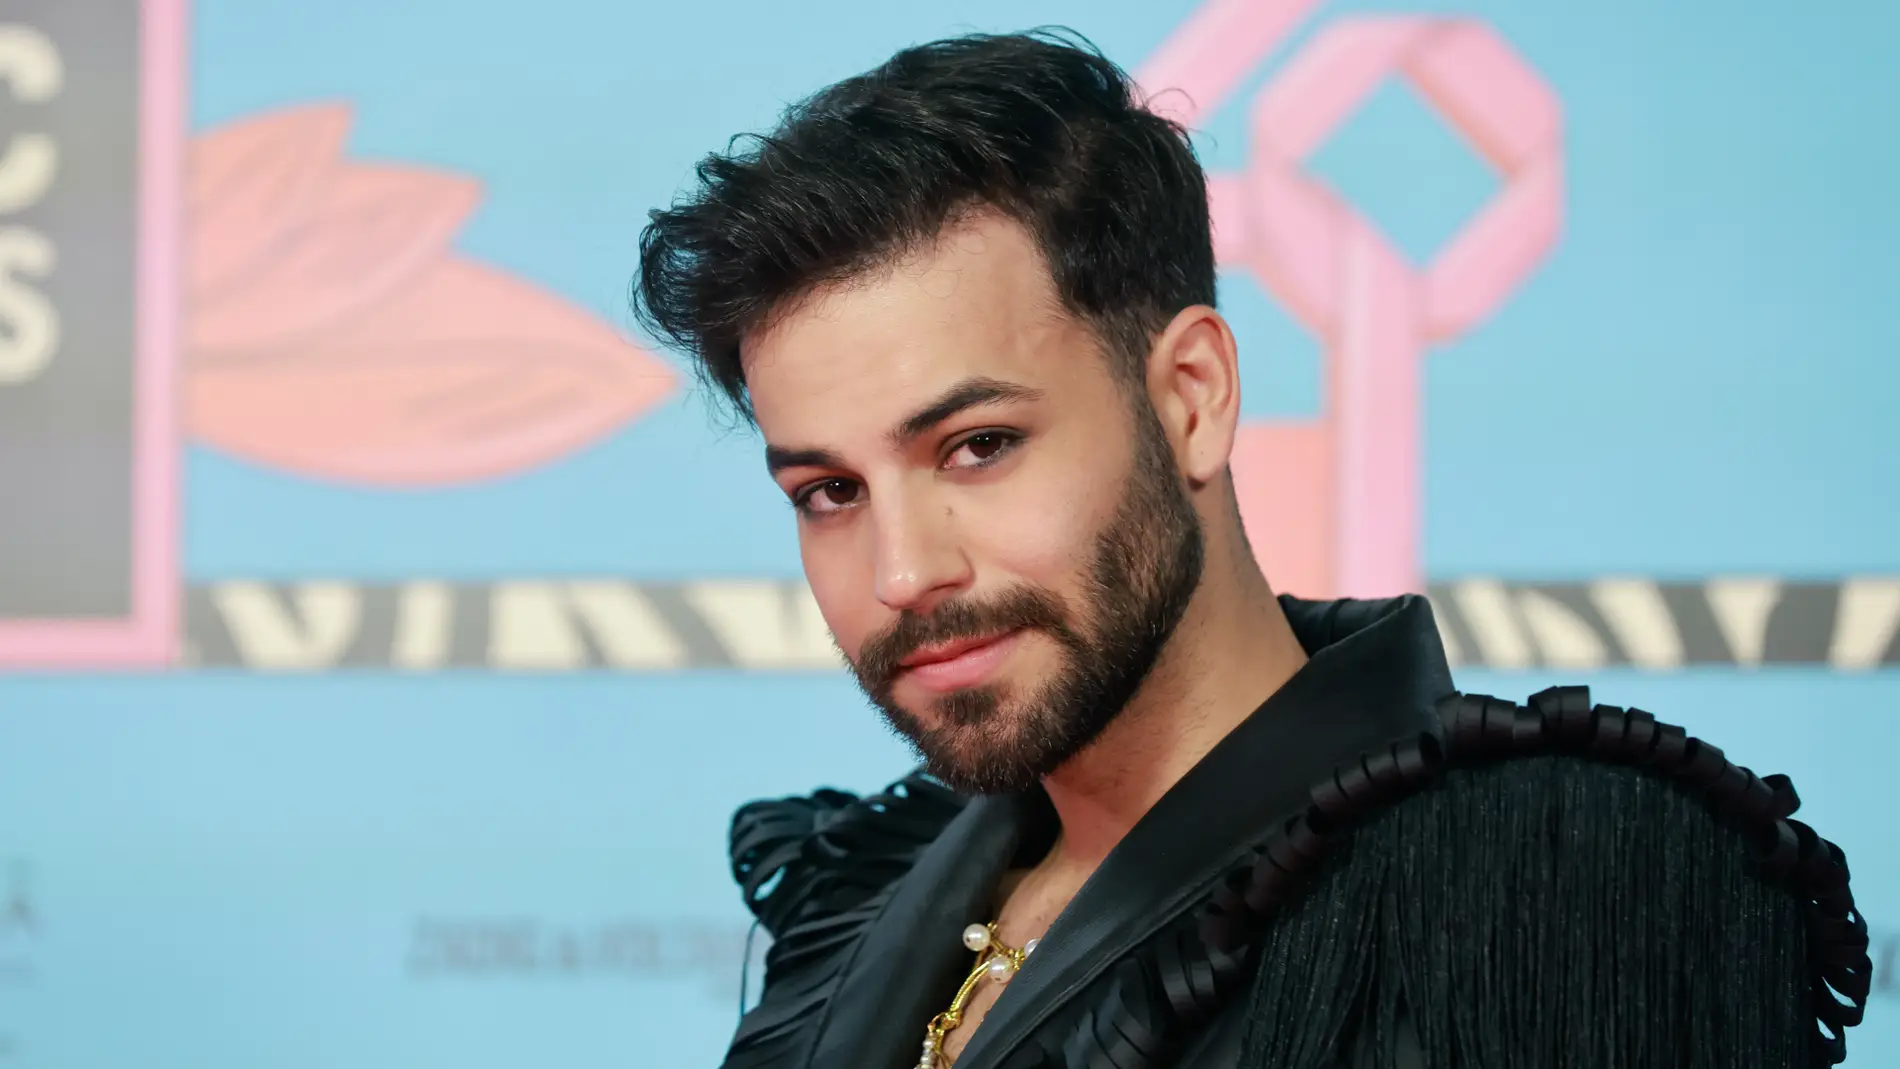 Agoney Hernández, candidato a Eurovisión 2023